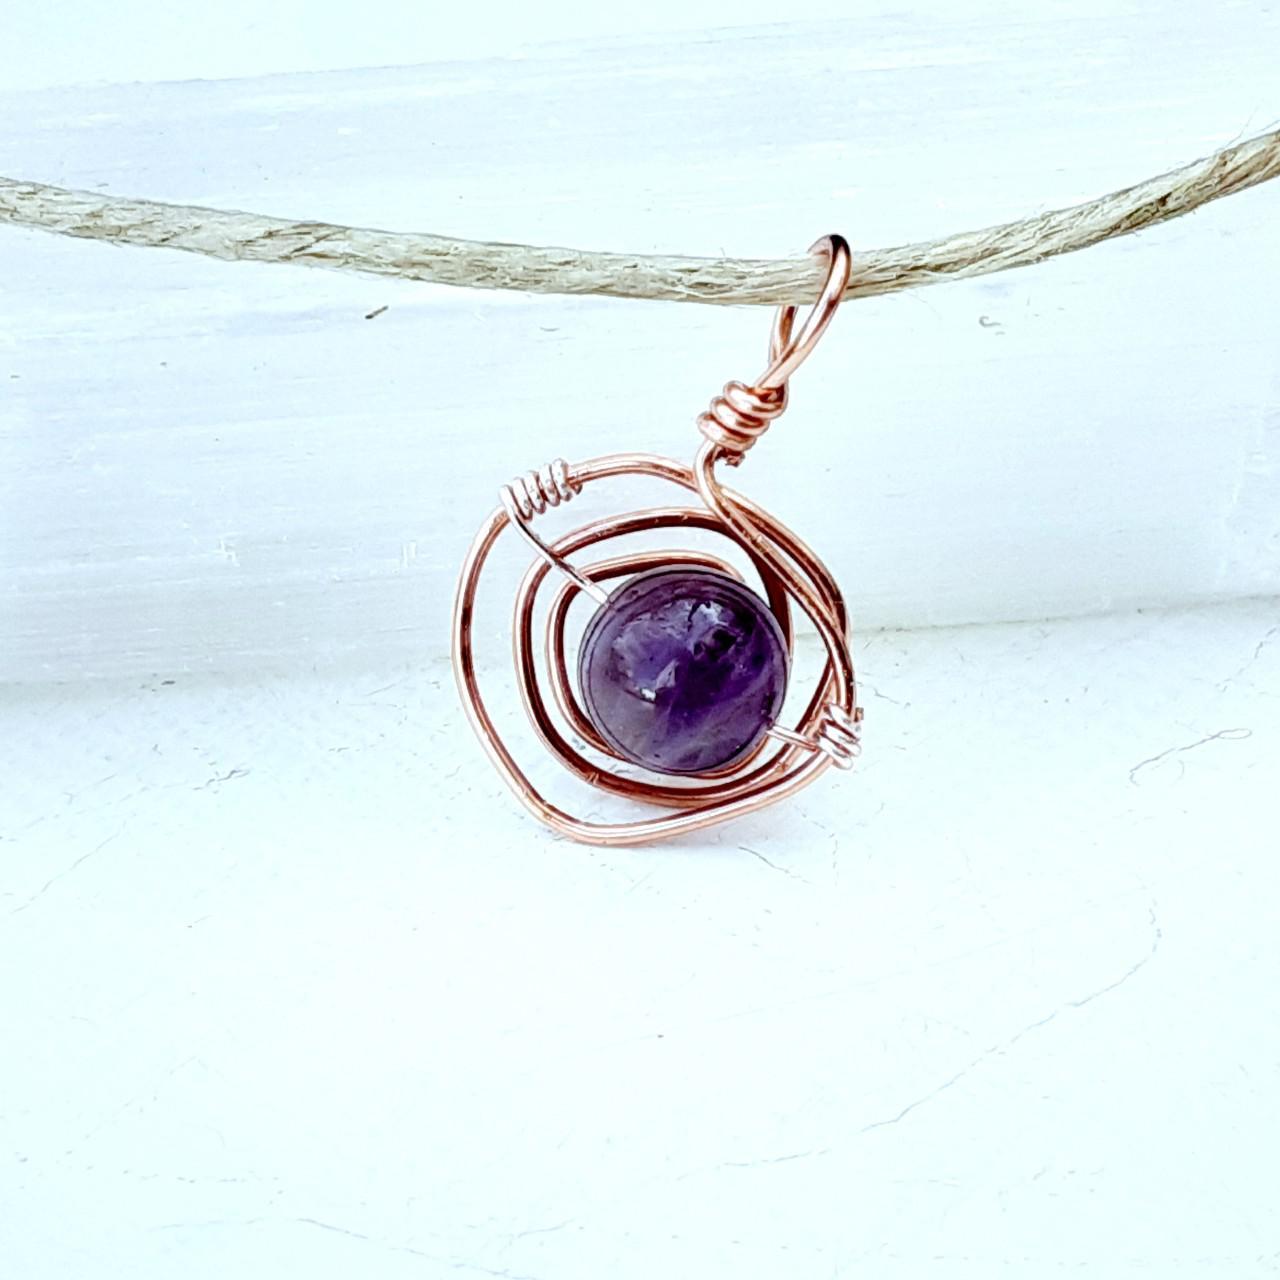 Product Image 1 - Hemp choker necklace
Copper swirl setting